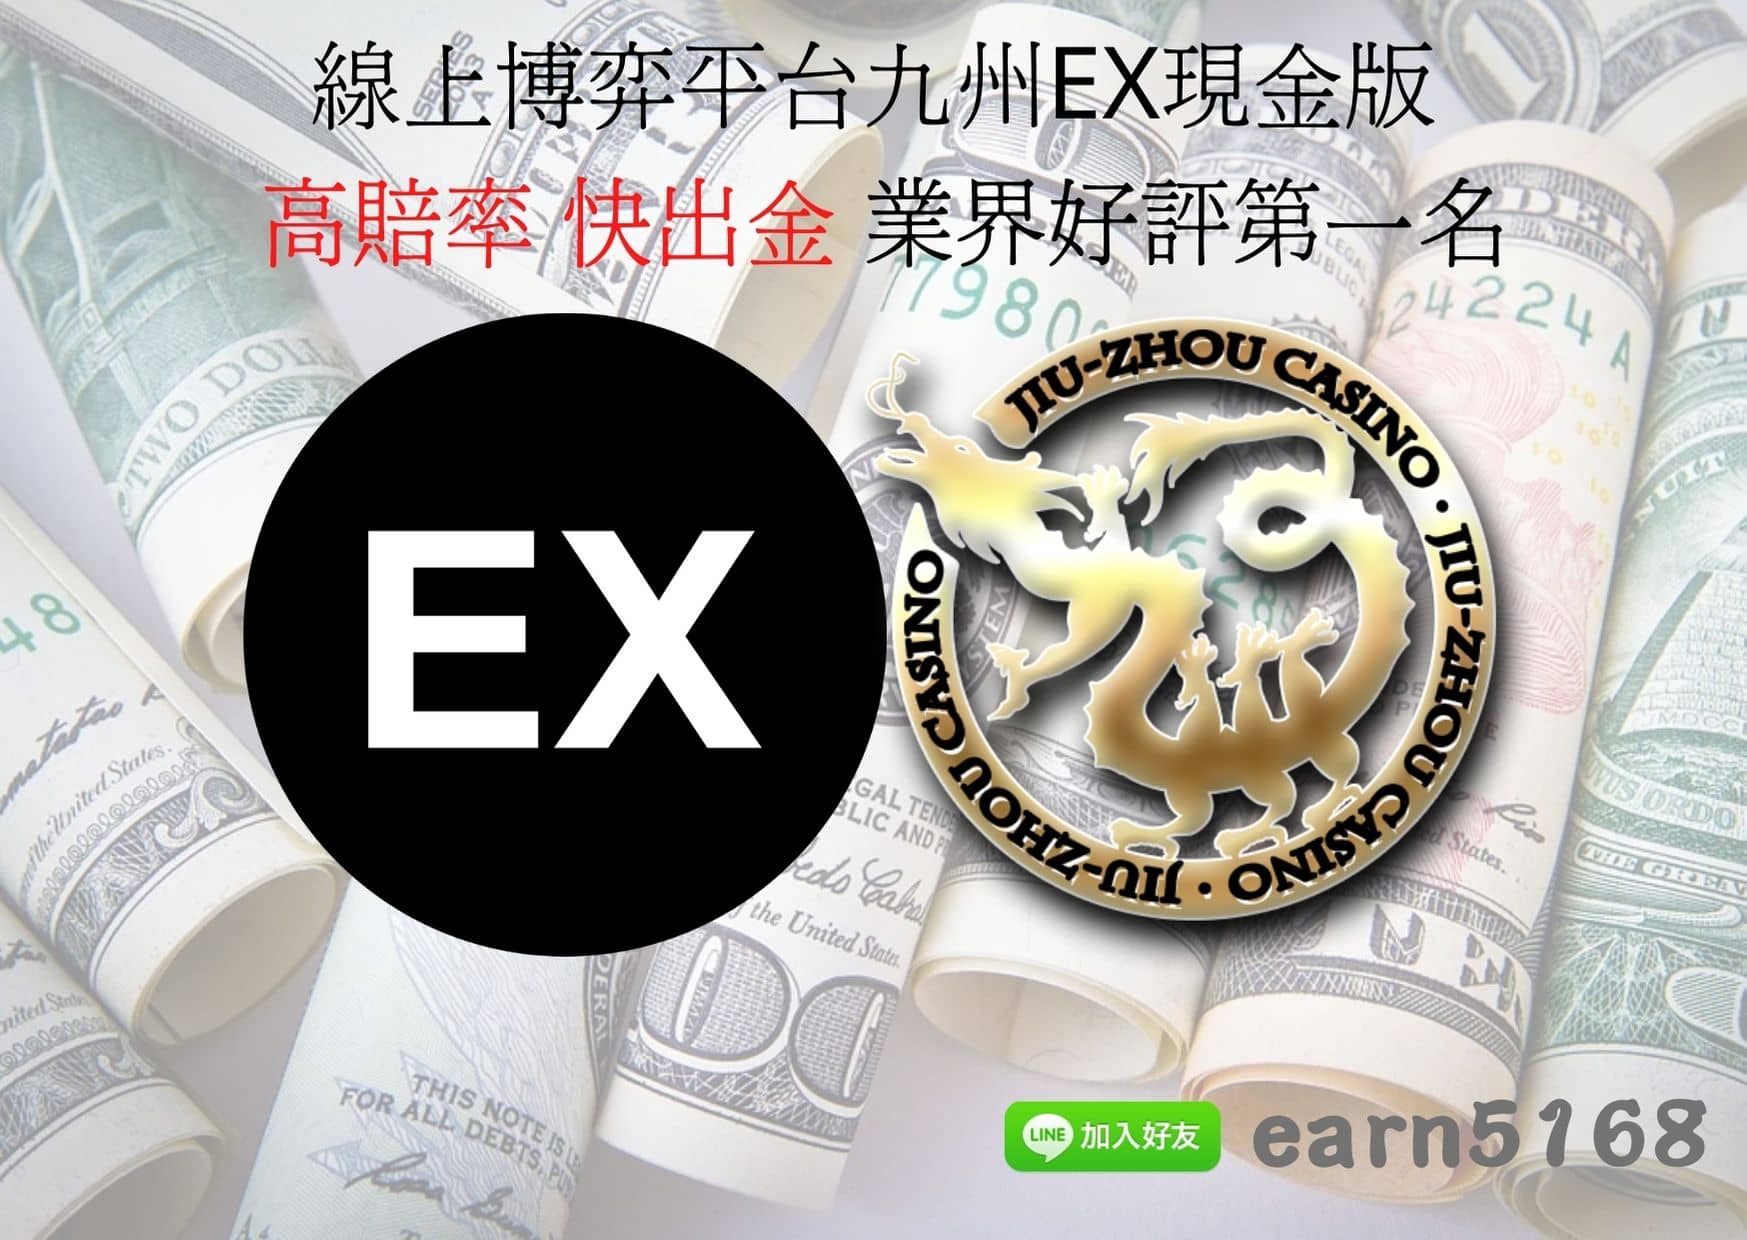 線上博弈平台九州EX現金版-高賠率 快出金 業界好評第一名